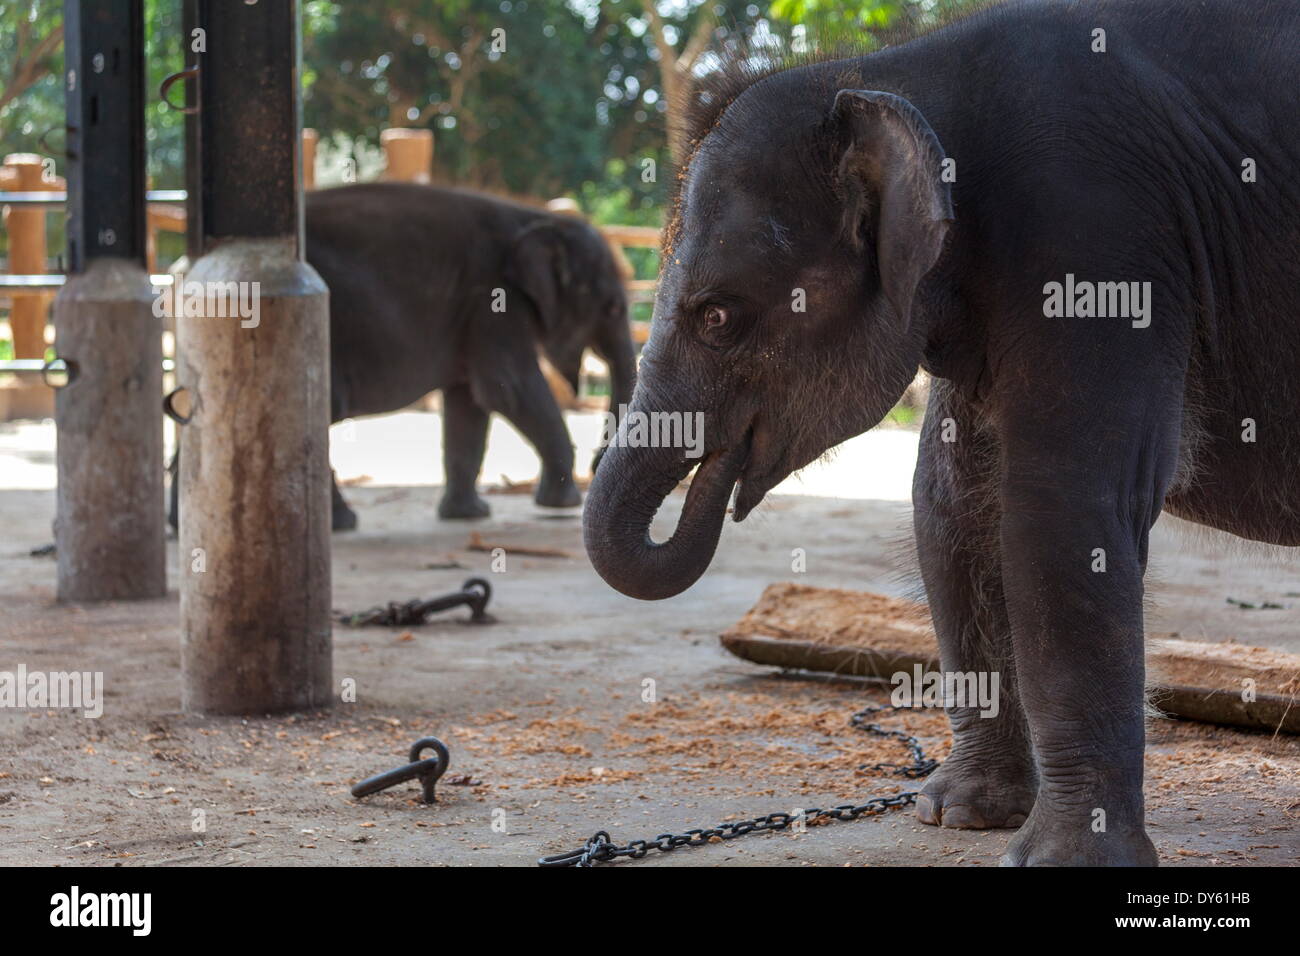 Baby elephants (Elephantidae) at the Pinnewala Elephant Orphanage, Sri Lanka, Asia Stock Photo